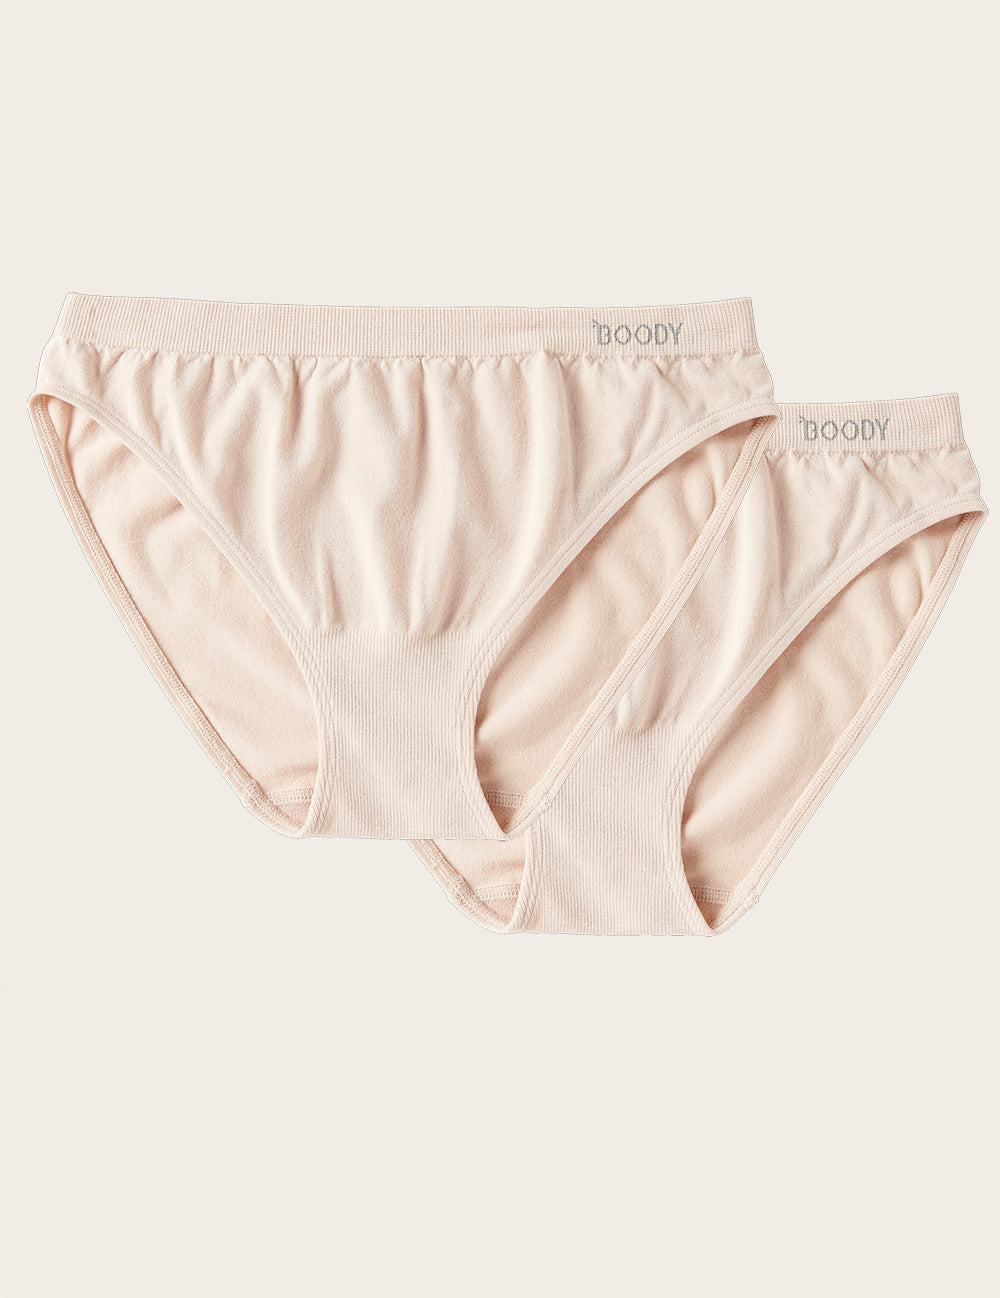 Boody Bamboo 2-pack of Classic Bikini Women's Underwear in Nude 0